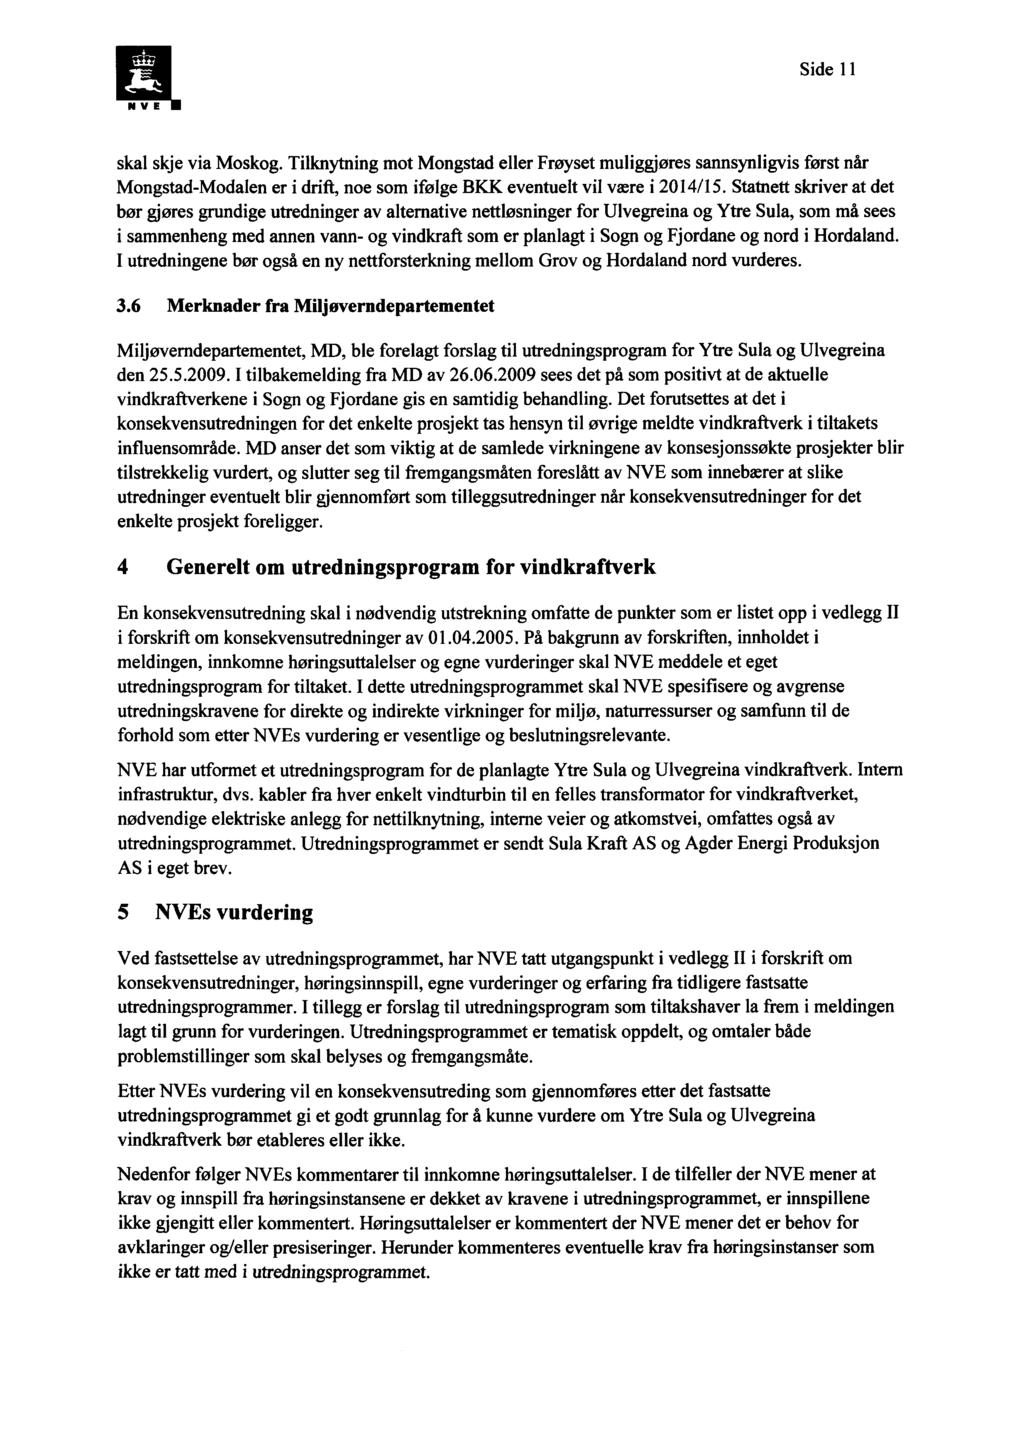 Side 11 skal skje via Moskog. Tilknytning mot Mongstad eller Frøyset muliggjøres sannsynligvis først når Mongstad-Modalen er i drift, noe som ifølge BKK eventuelt vil være i 2014/15.